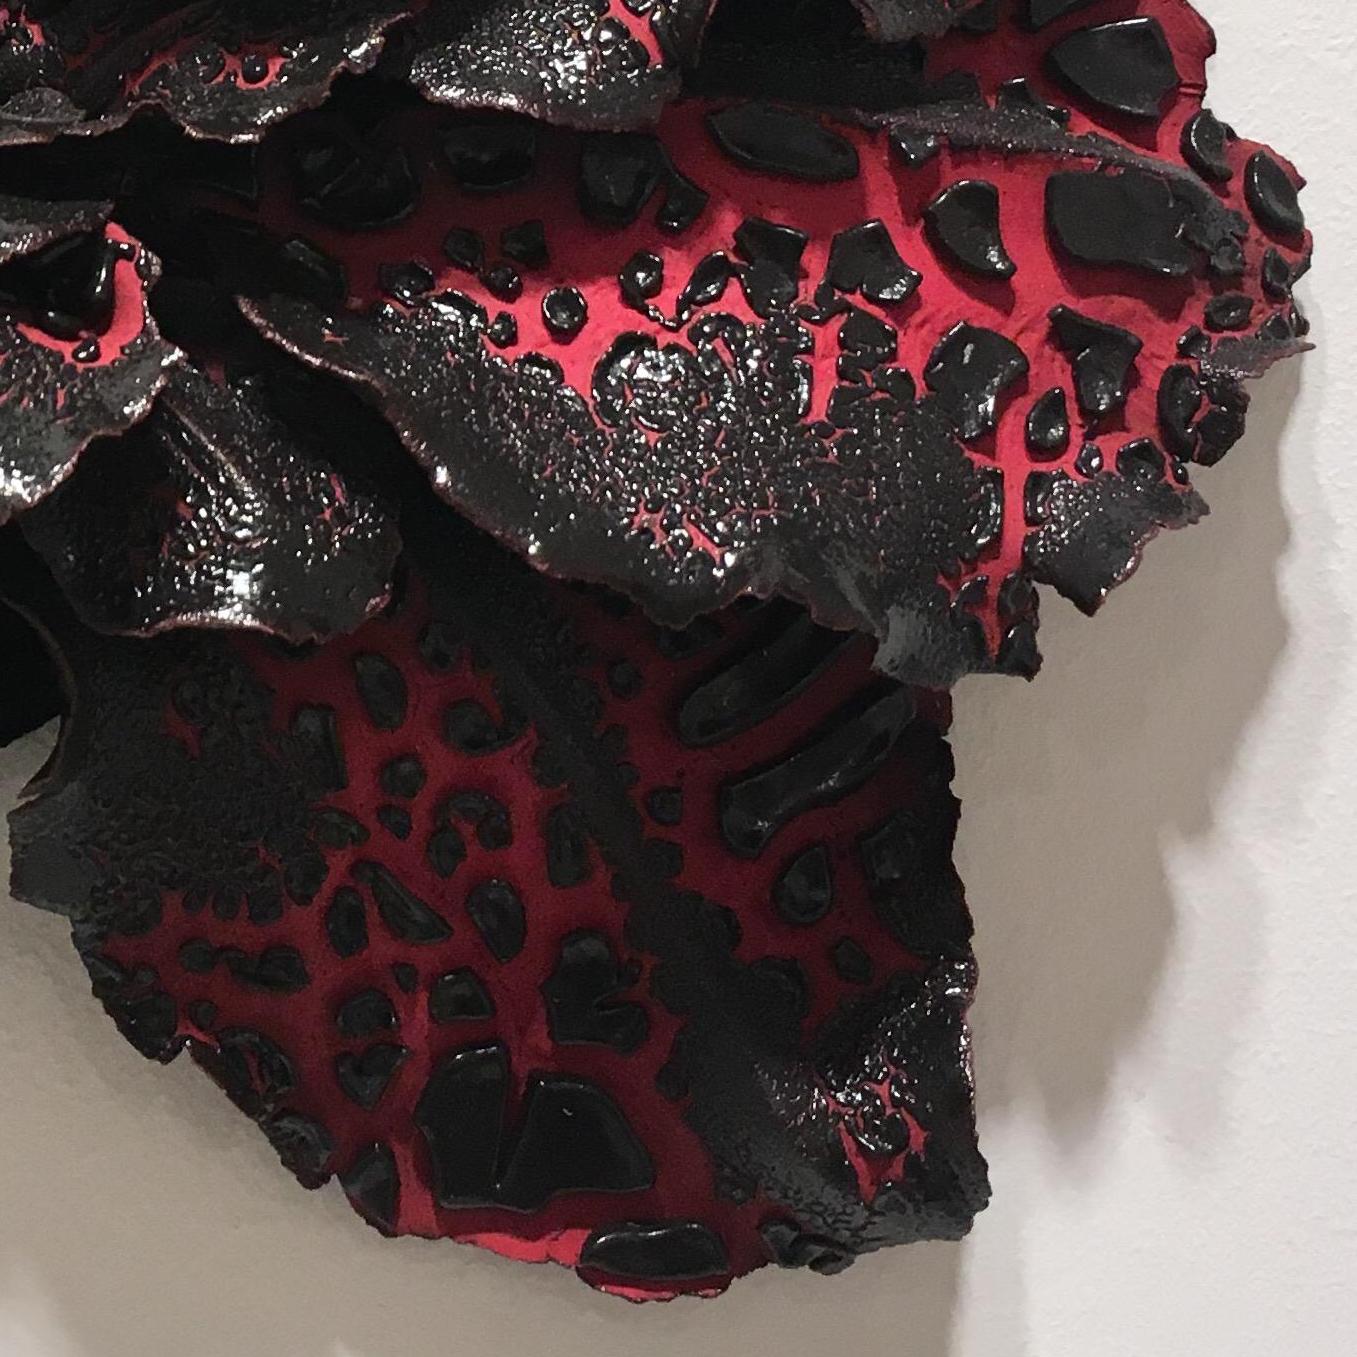 Christopher Adams, Untitled, Biomorphic ceramic sculpture, 2016 3